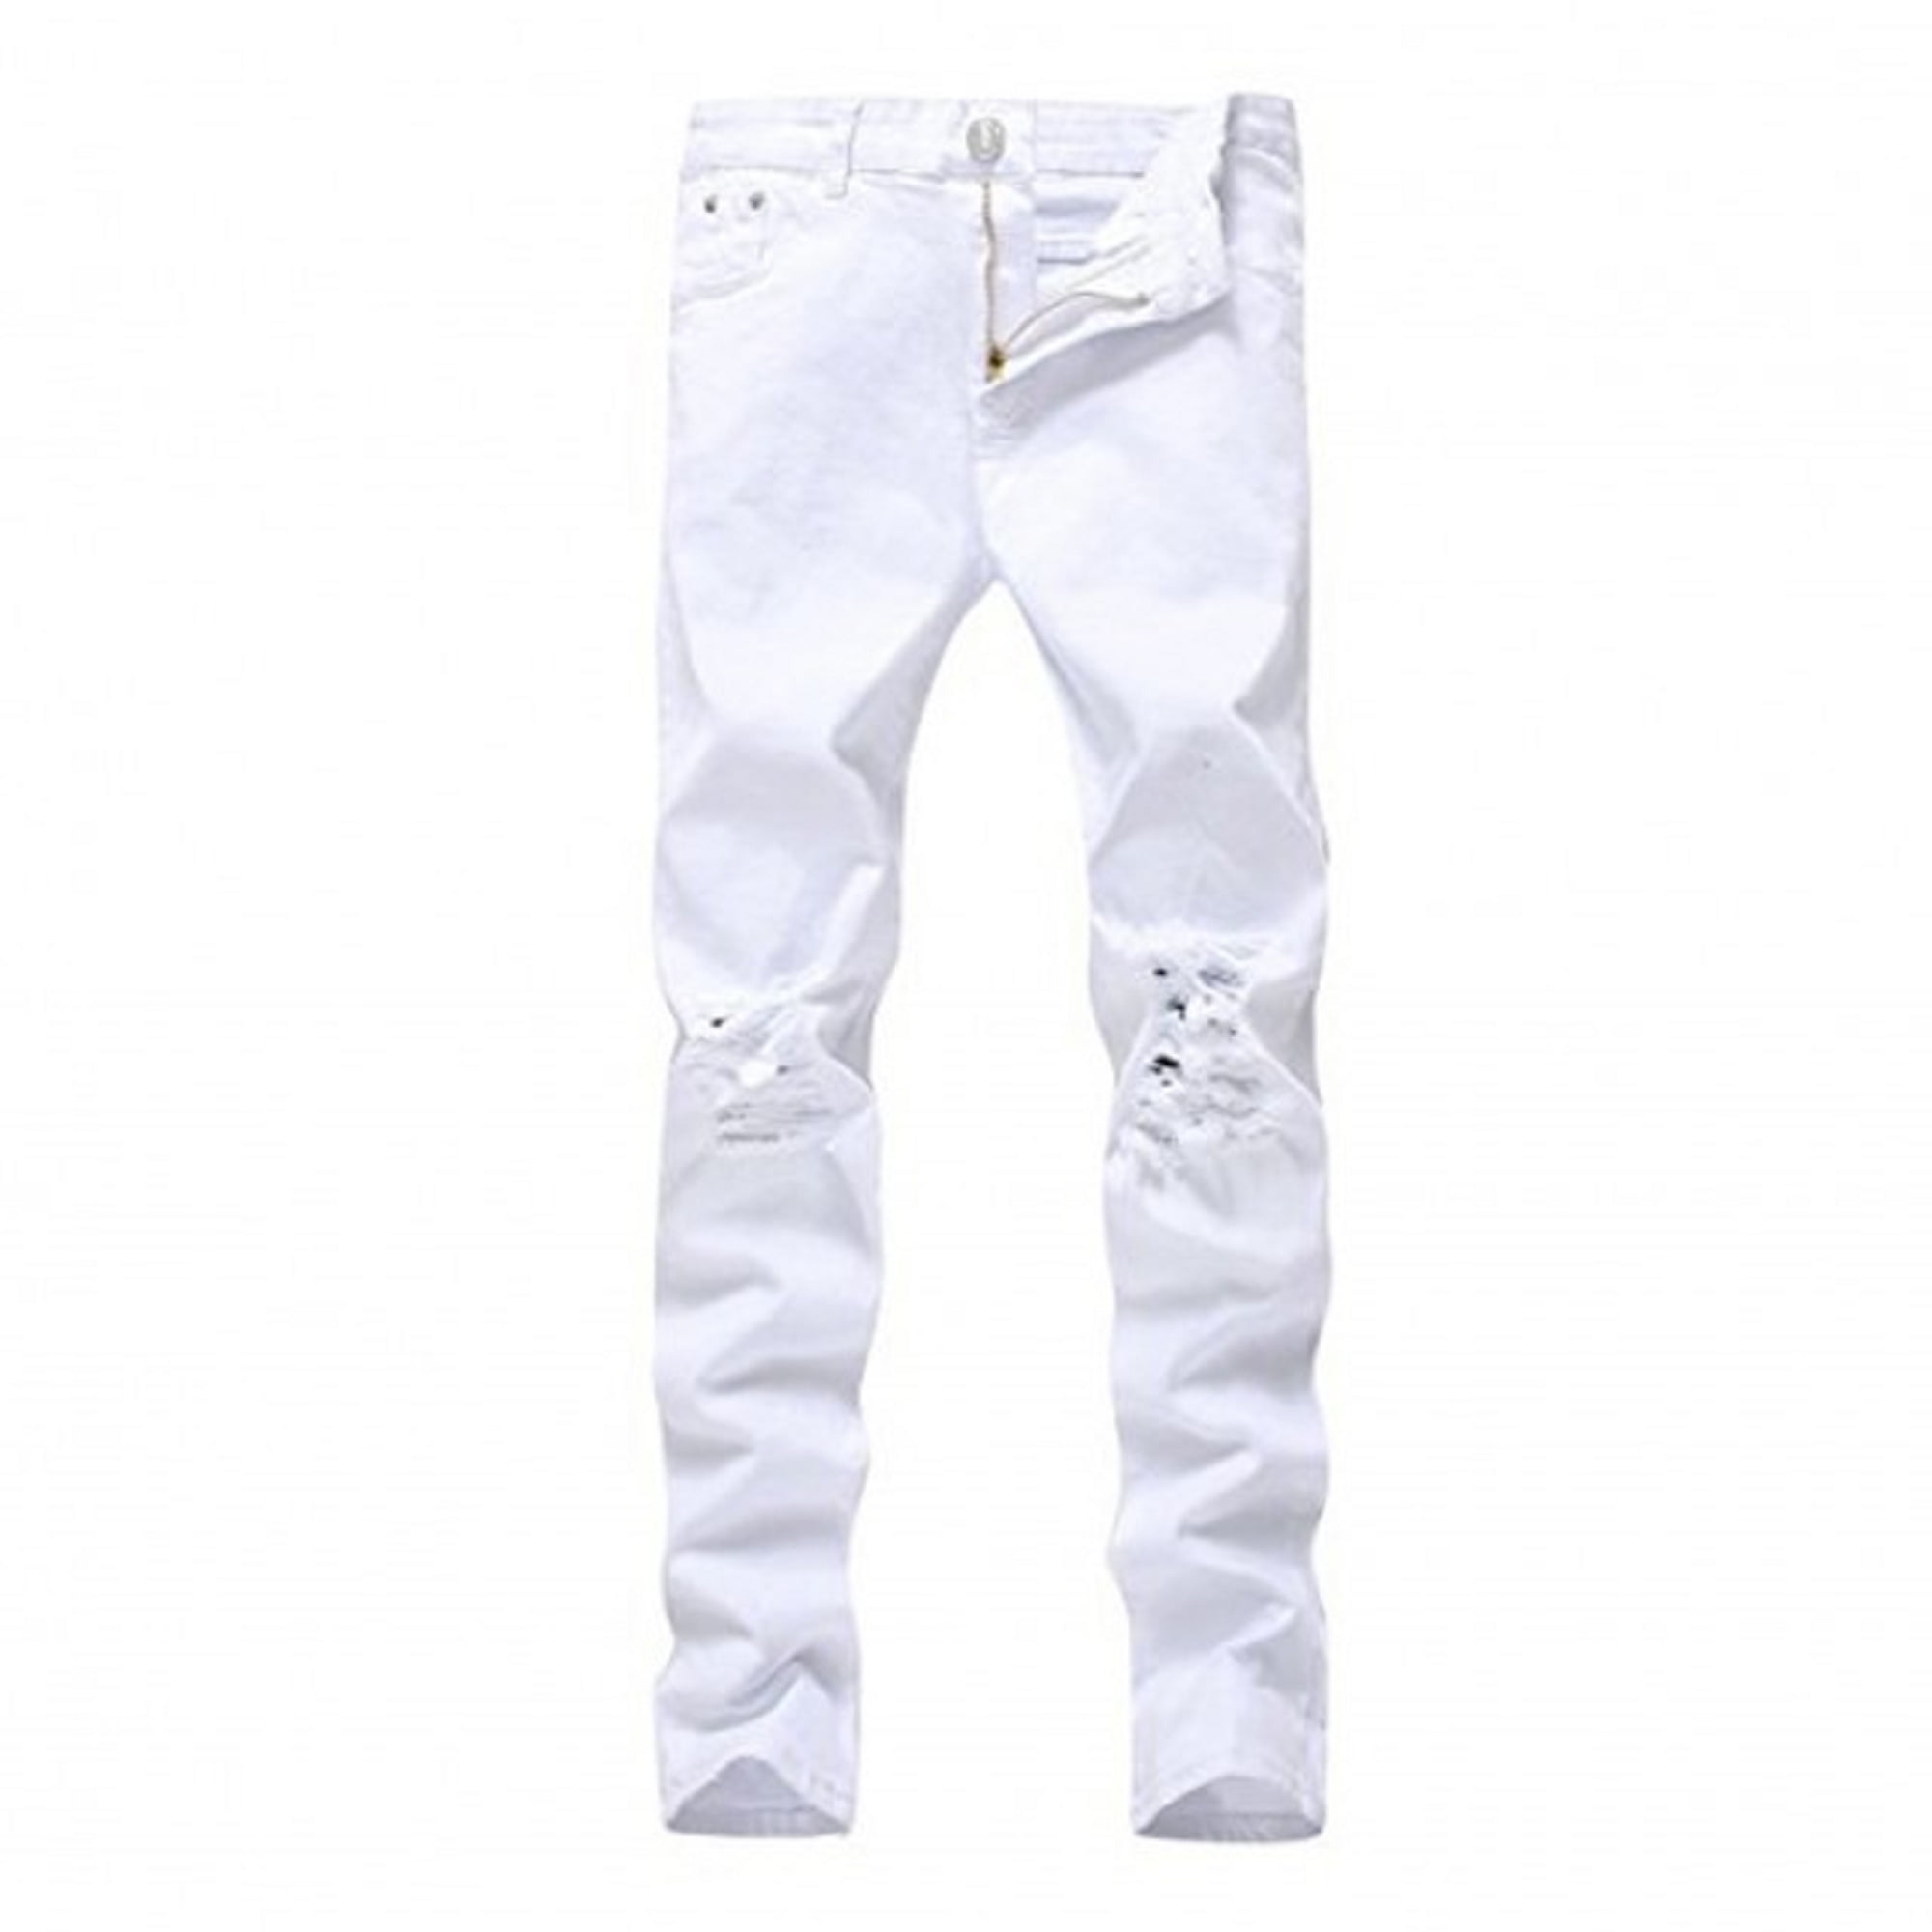 white jeans 4t boy